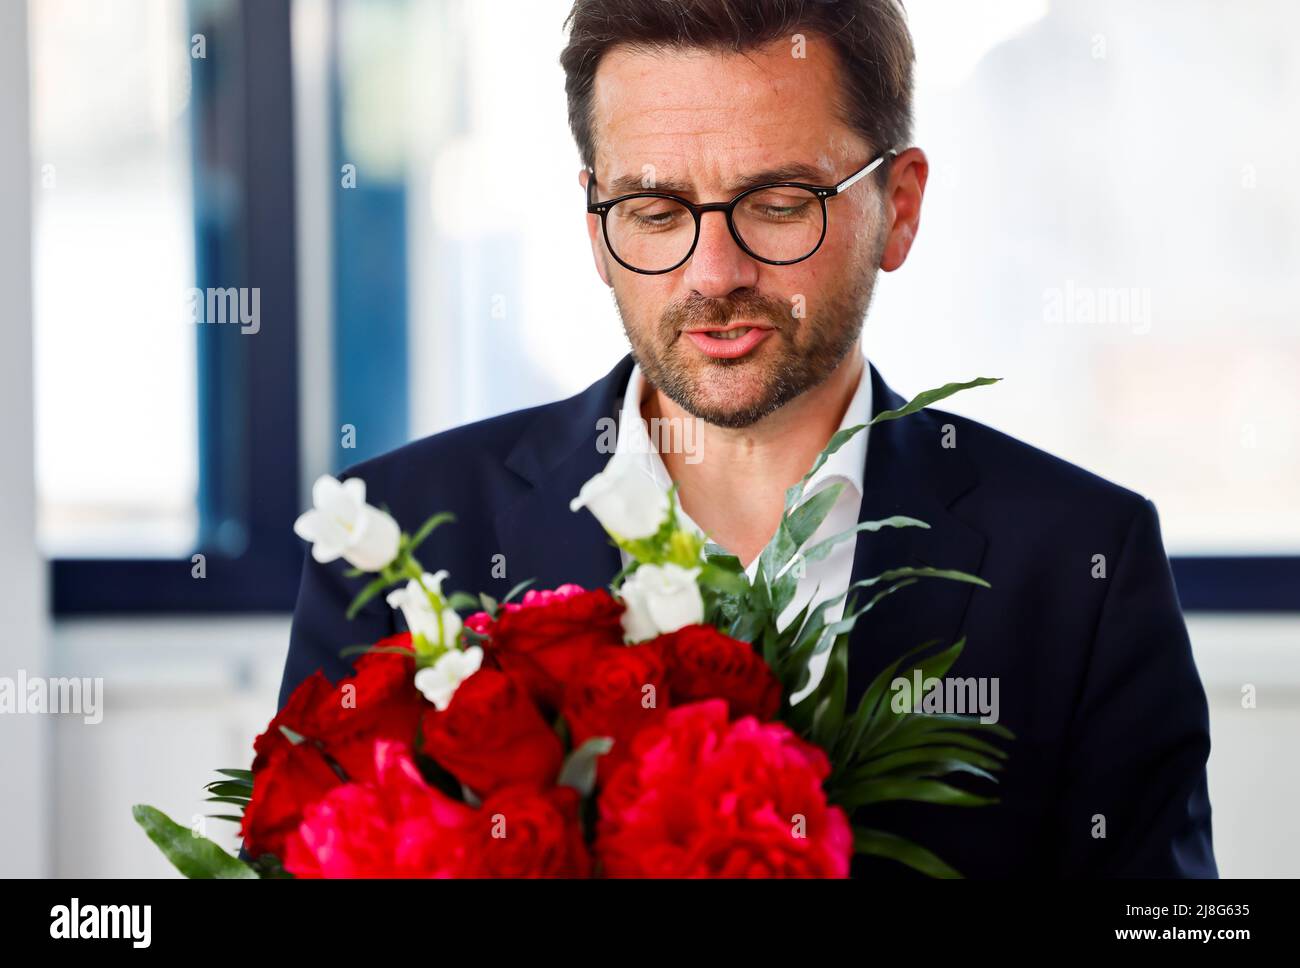 Thomas Kutschaty, candidato principal del partido socialdemócrata alemán SPD para las elecciones federales de Renania del Norte-Westfalia (NRW), recibe flores durante una reunión en la sede del partido en Berlín, Alemania, el 16 de mayo de 2022. REUTERS/Hannibal Hanschke Foto de stock